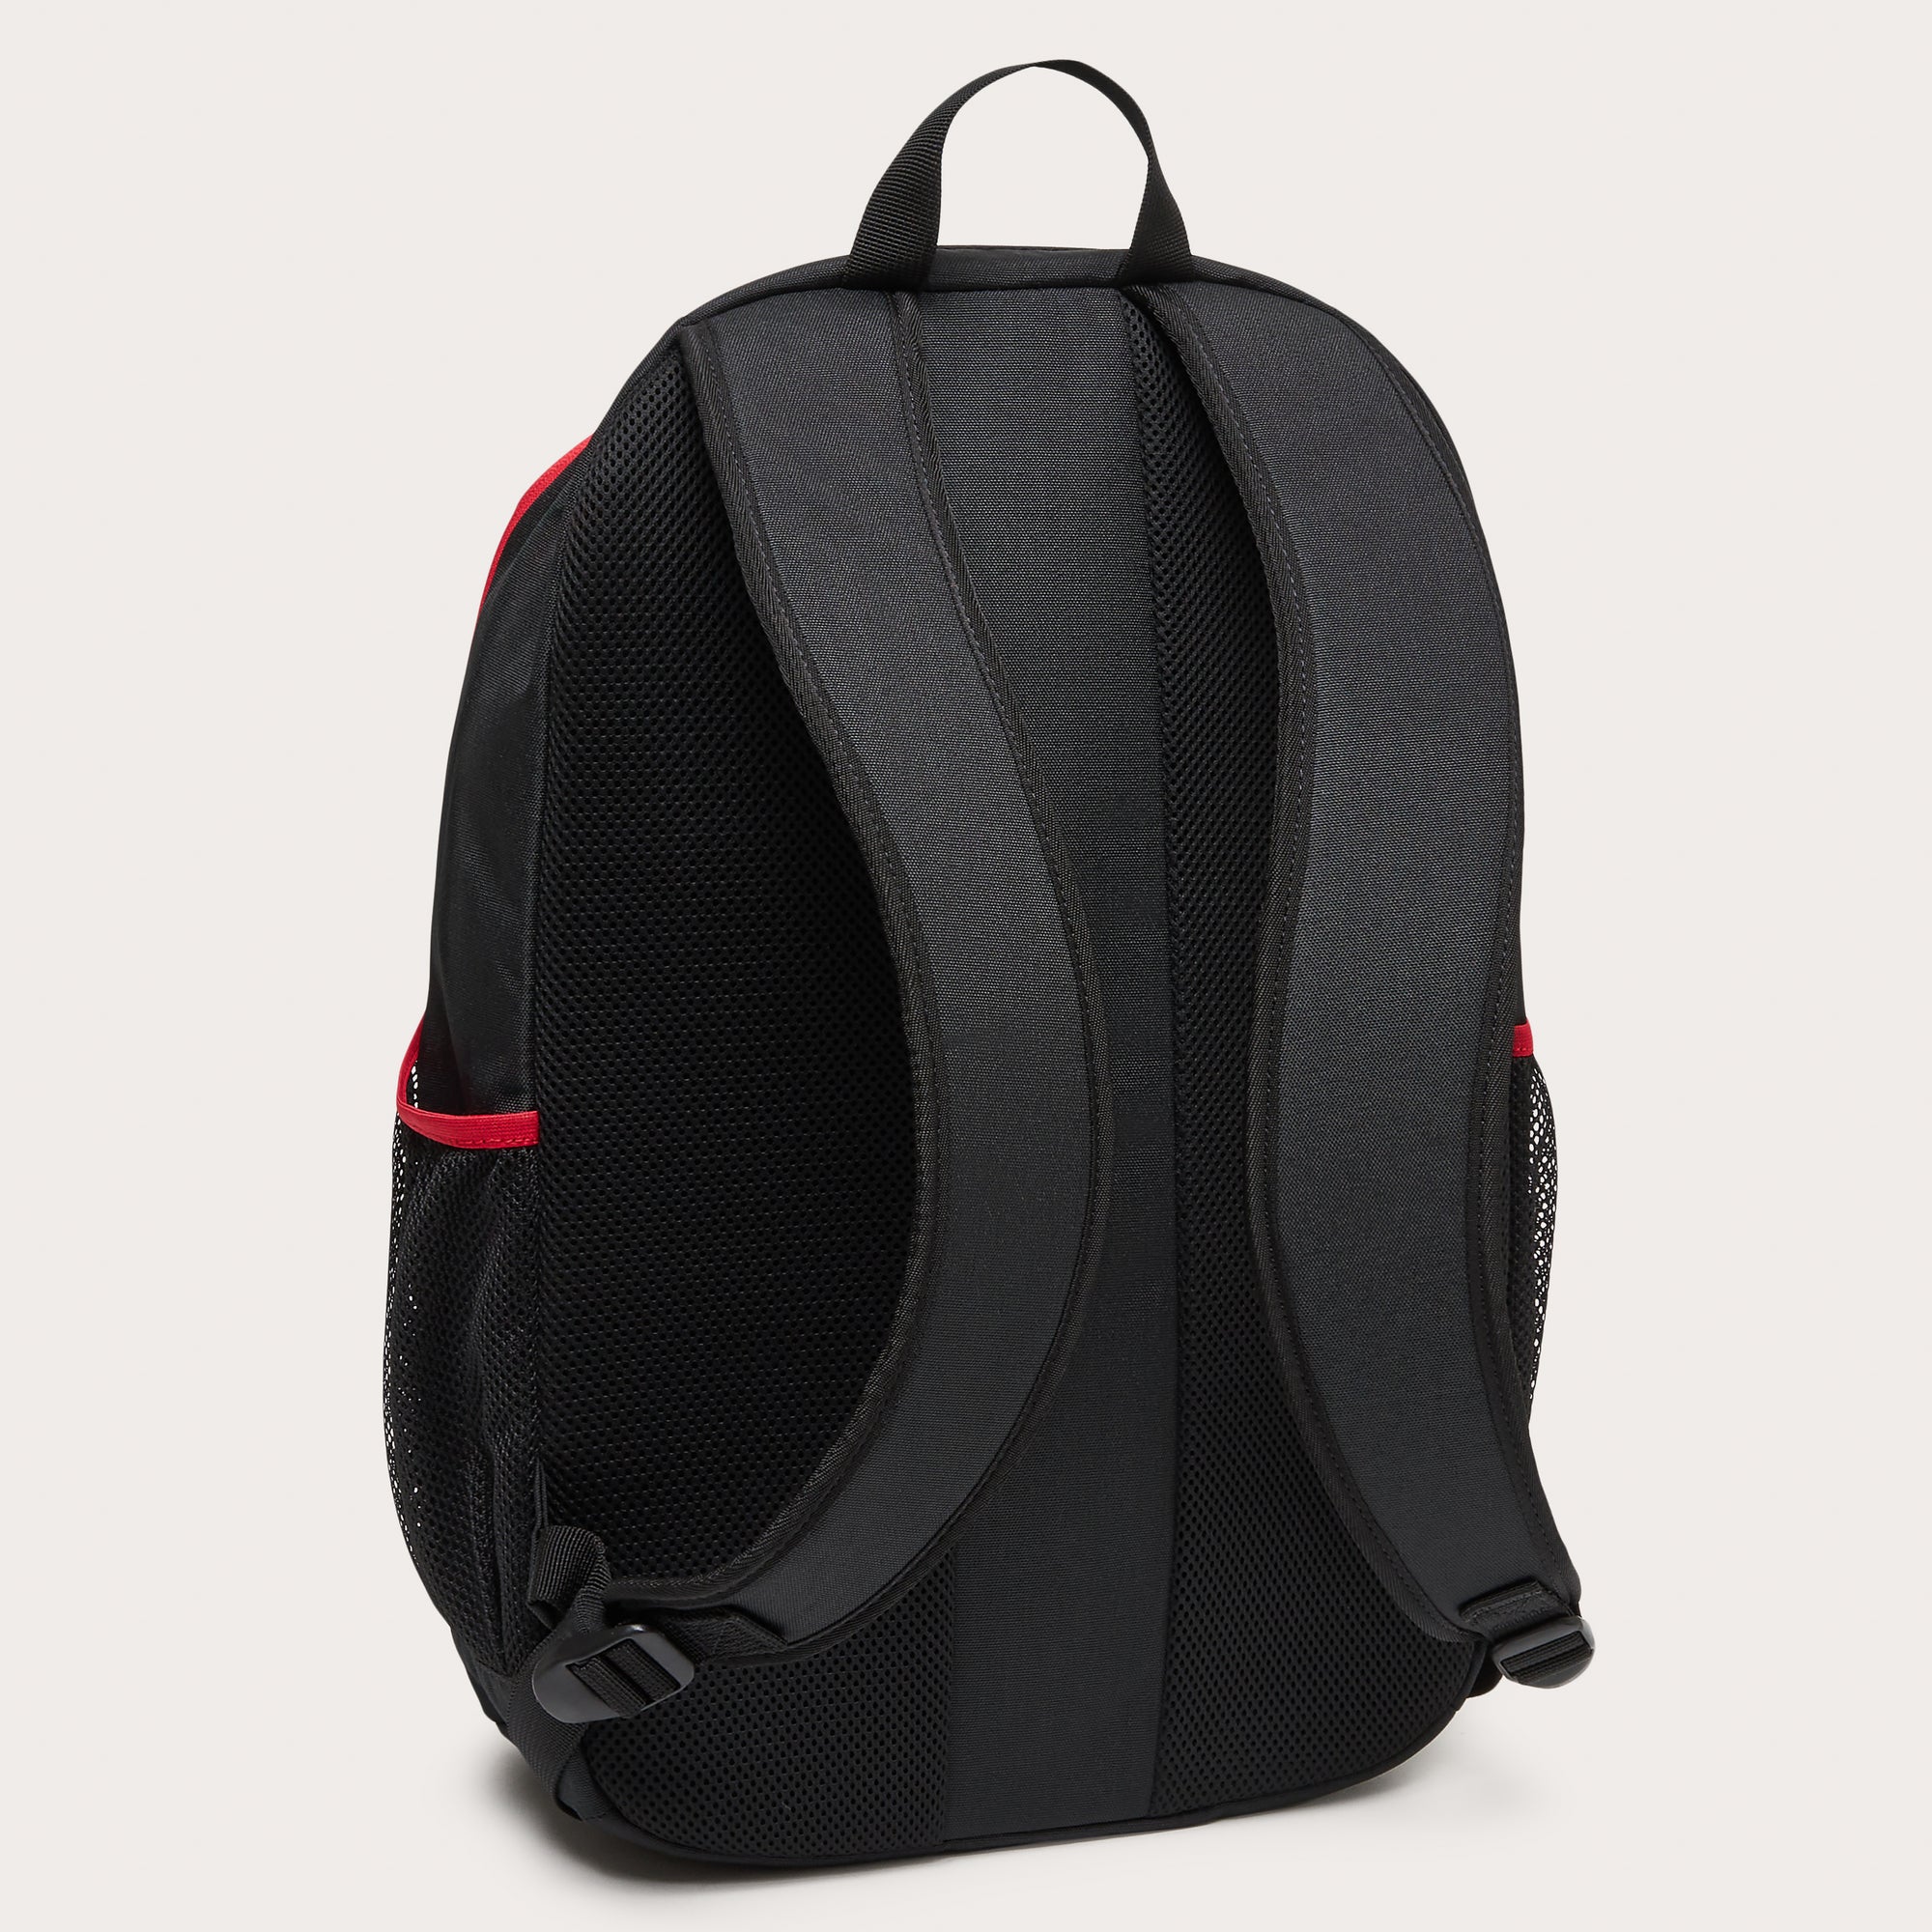 Red black Enduro backpack 25Lt 4.0<BR/>